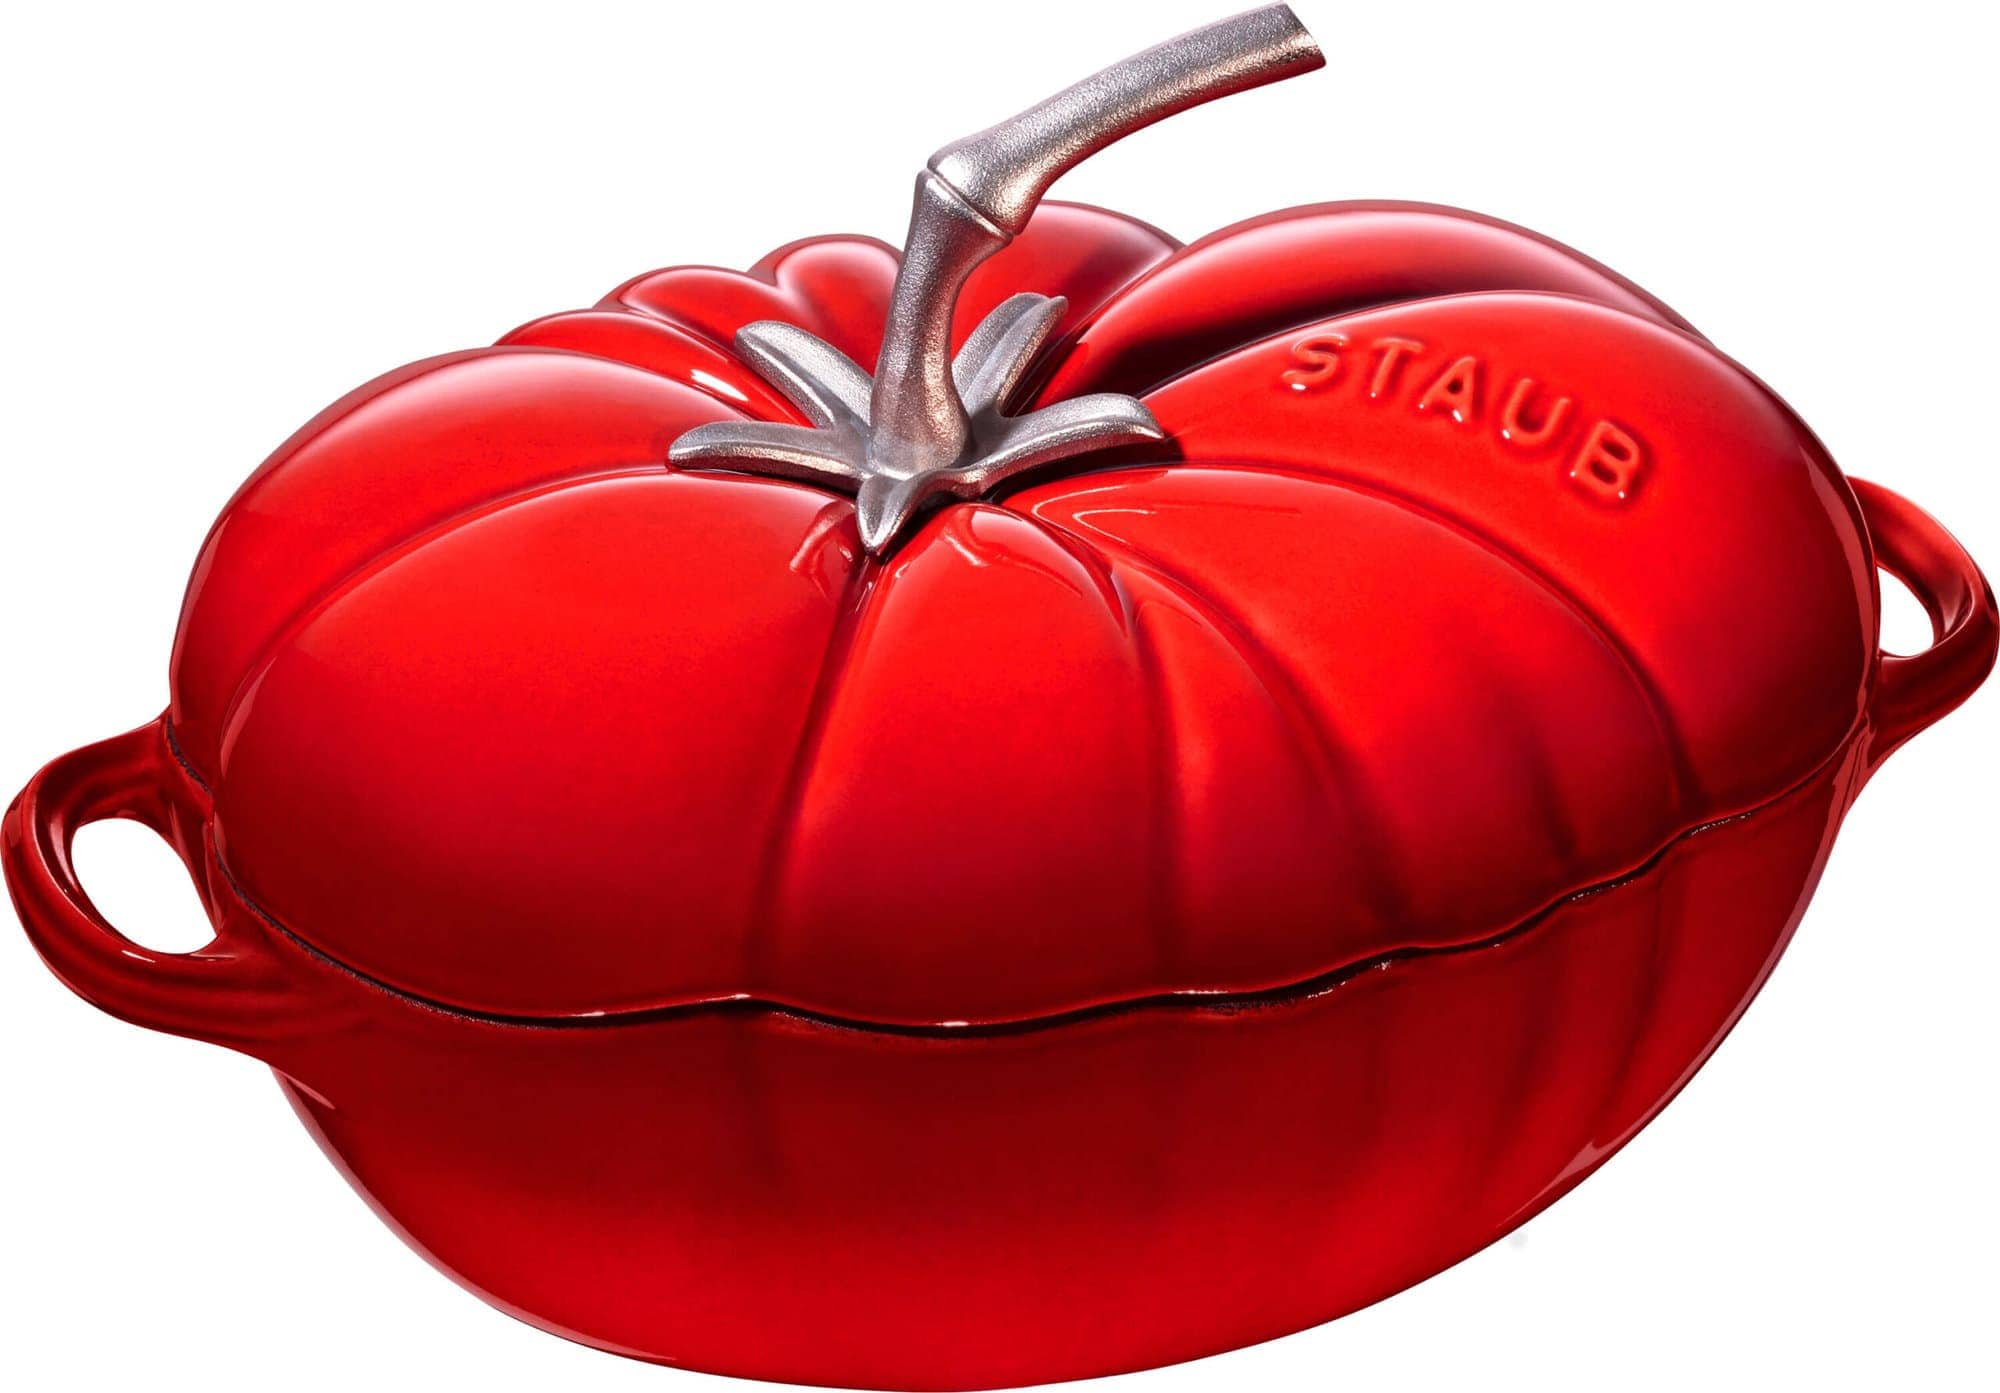 Garnek żeliwny owalny pomidor Staub - 2.5 ltr, Czerwony